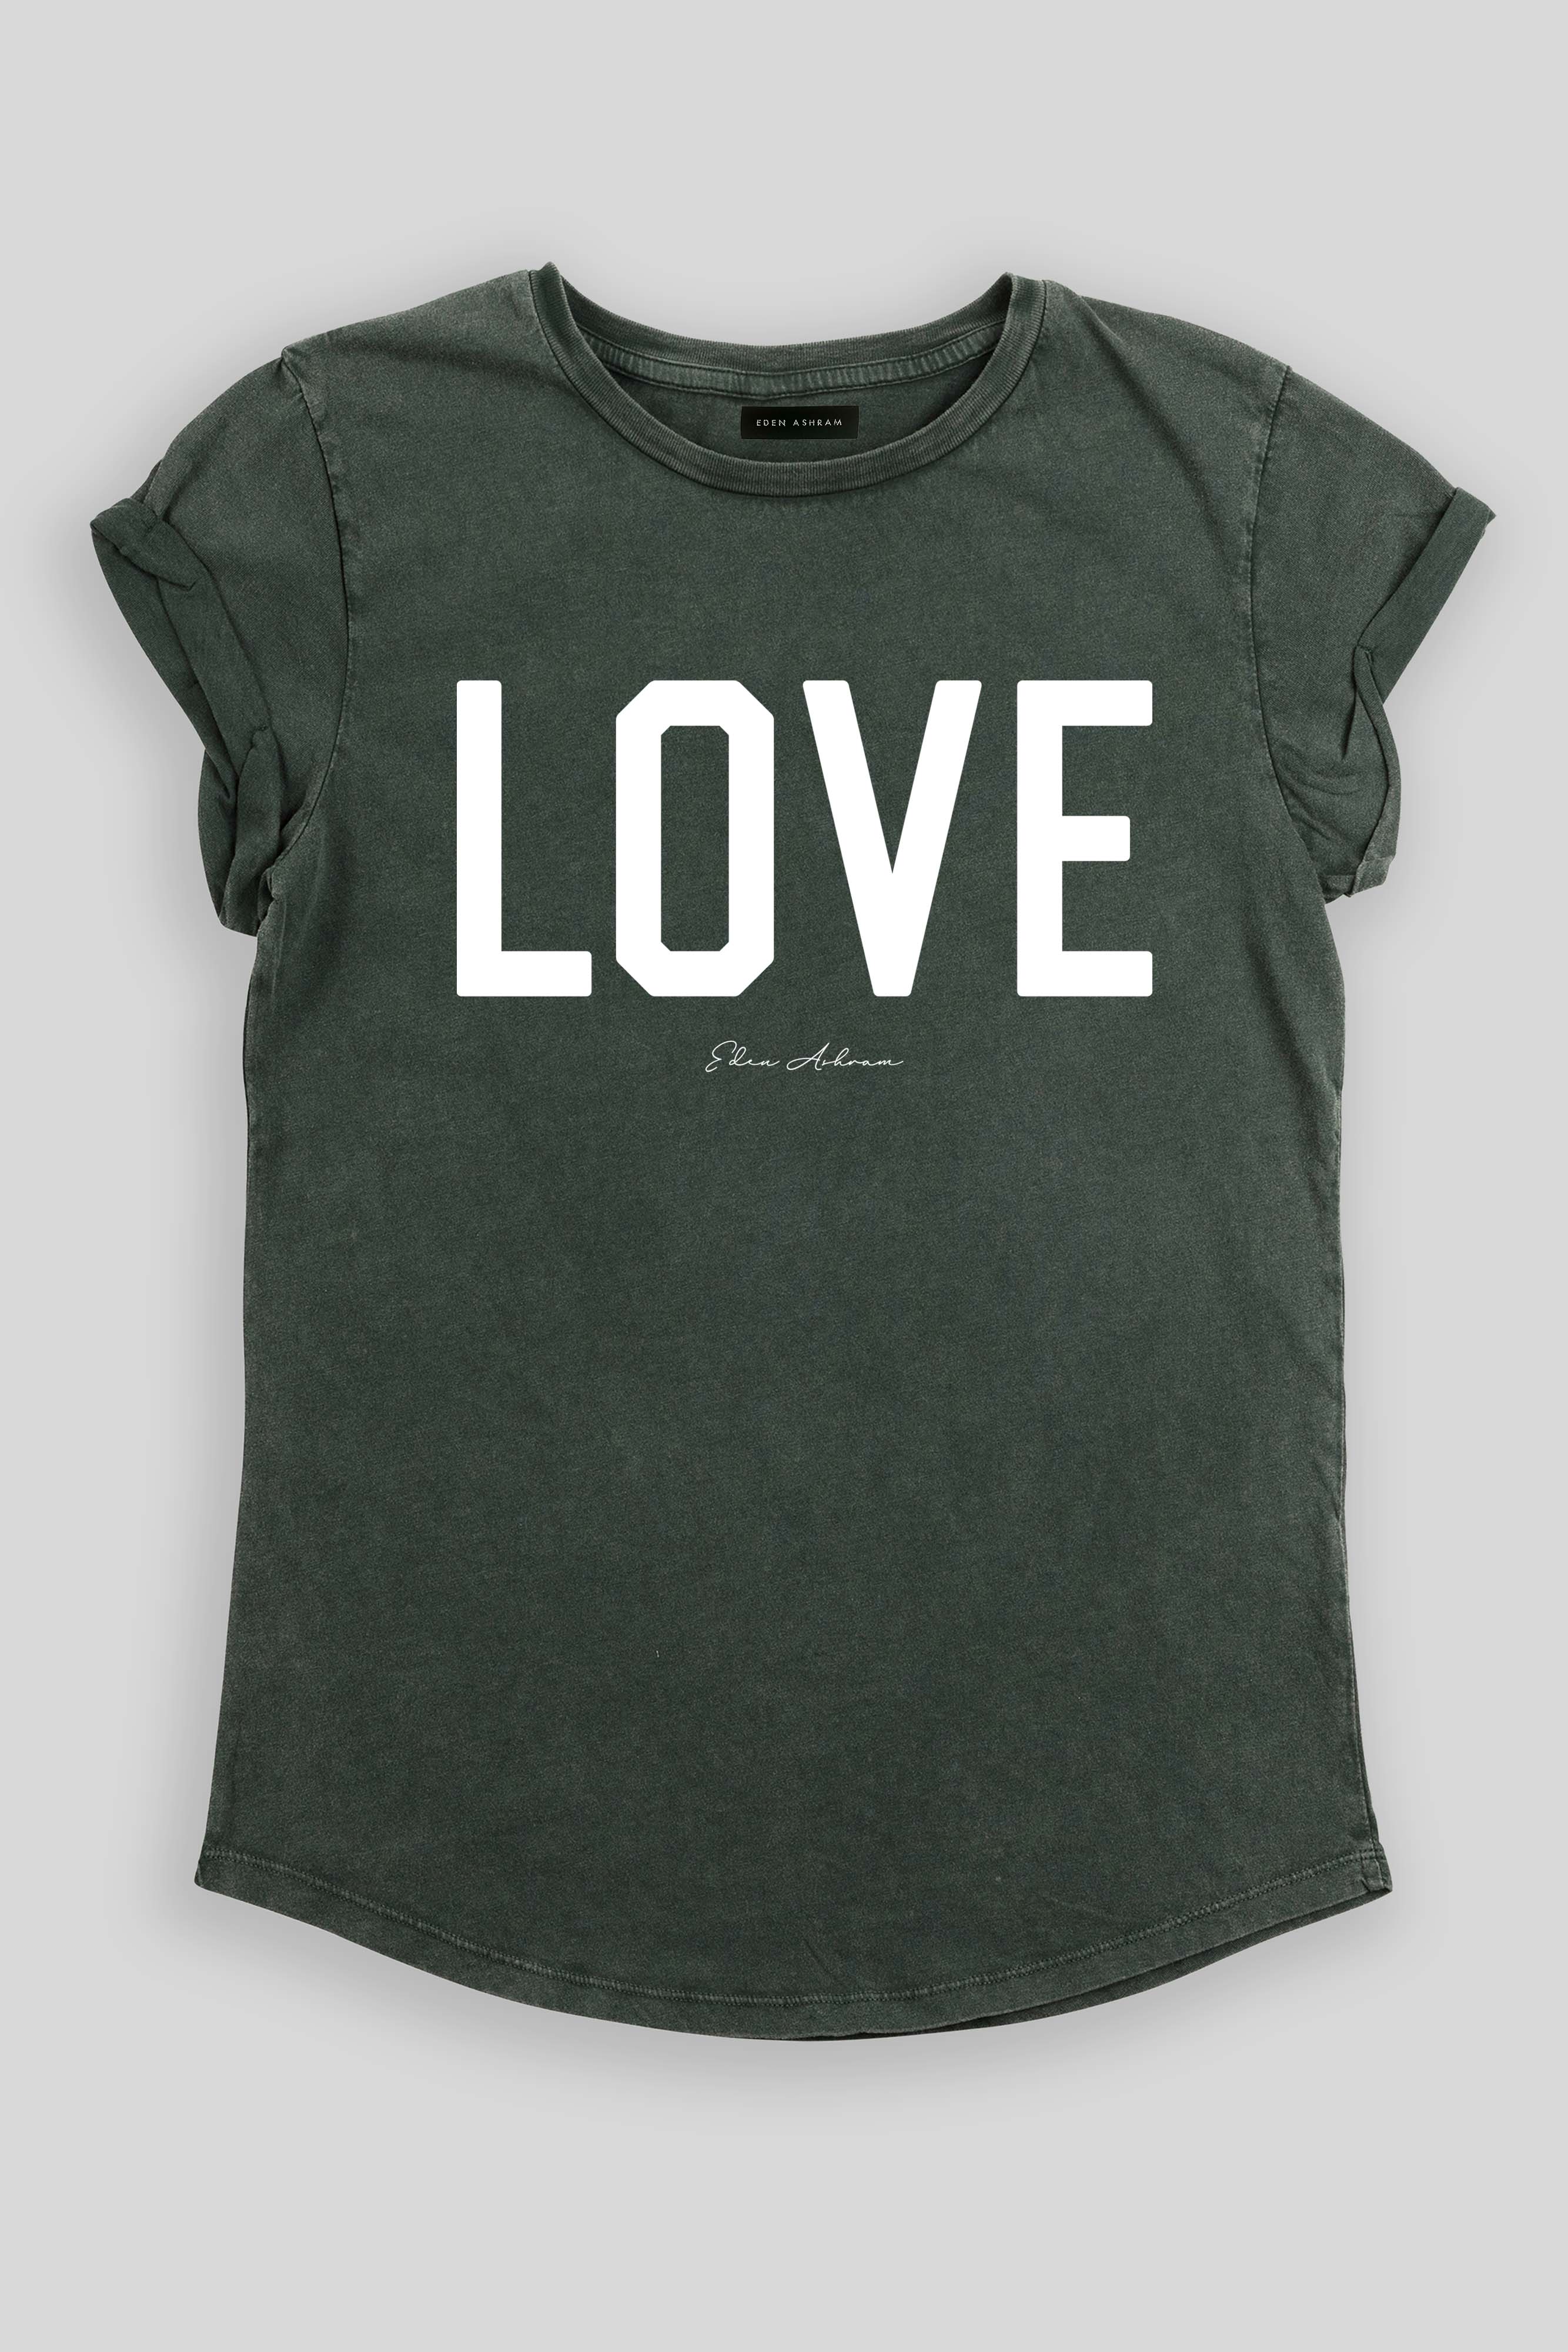 EDEN ASHRAM LOVE Premium Rolled Sleeve T-Shirt Stonewash Green